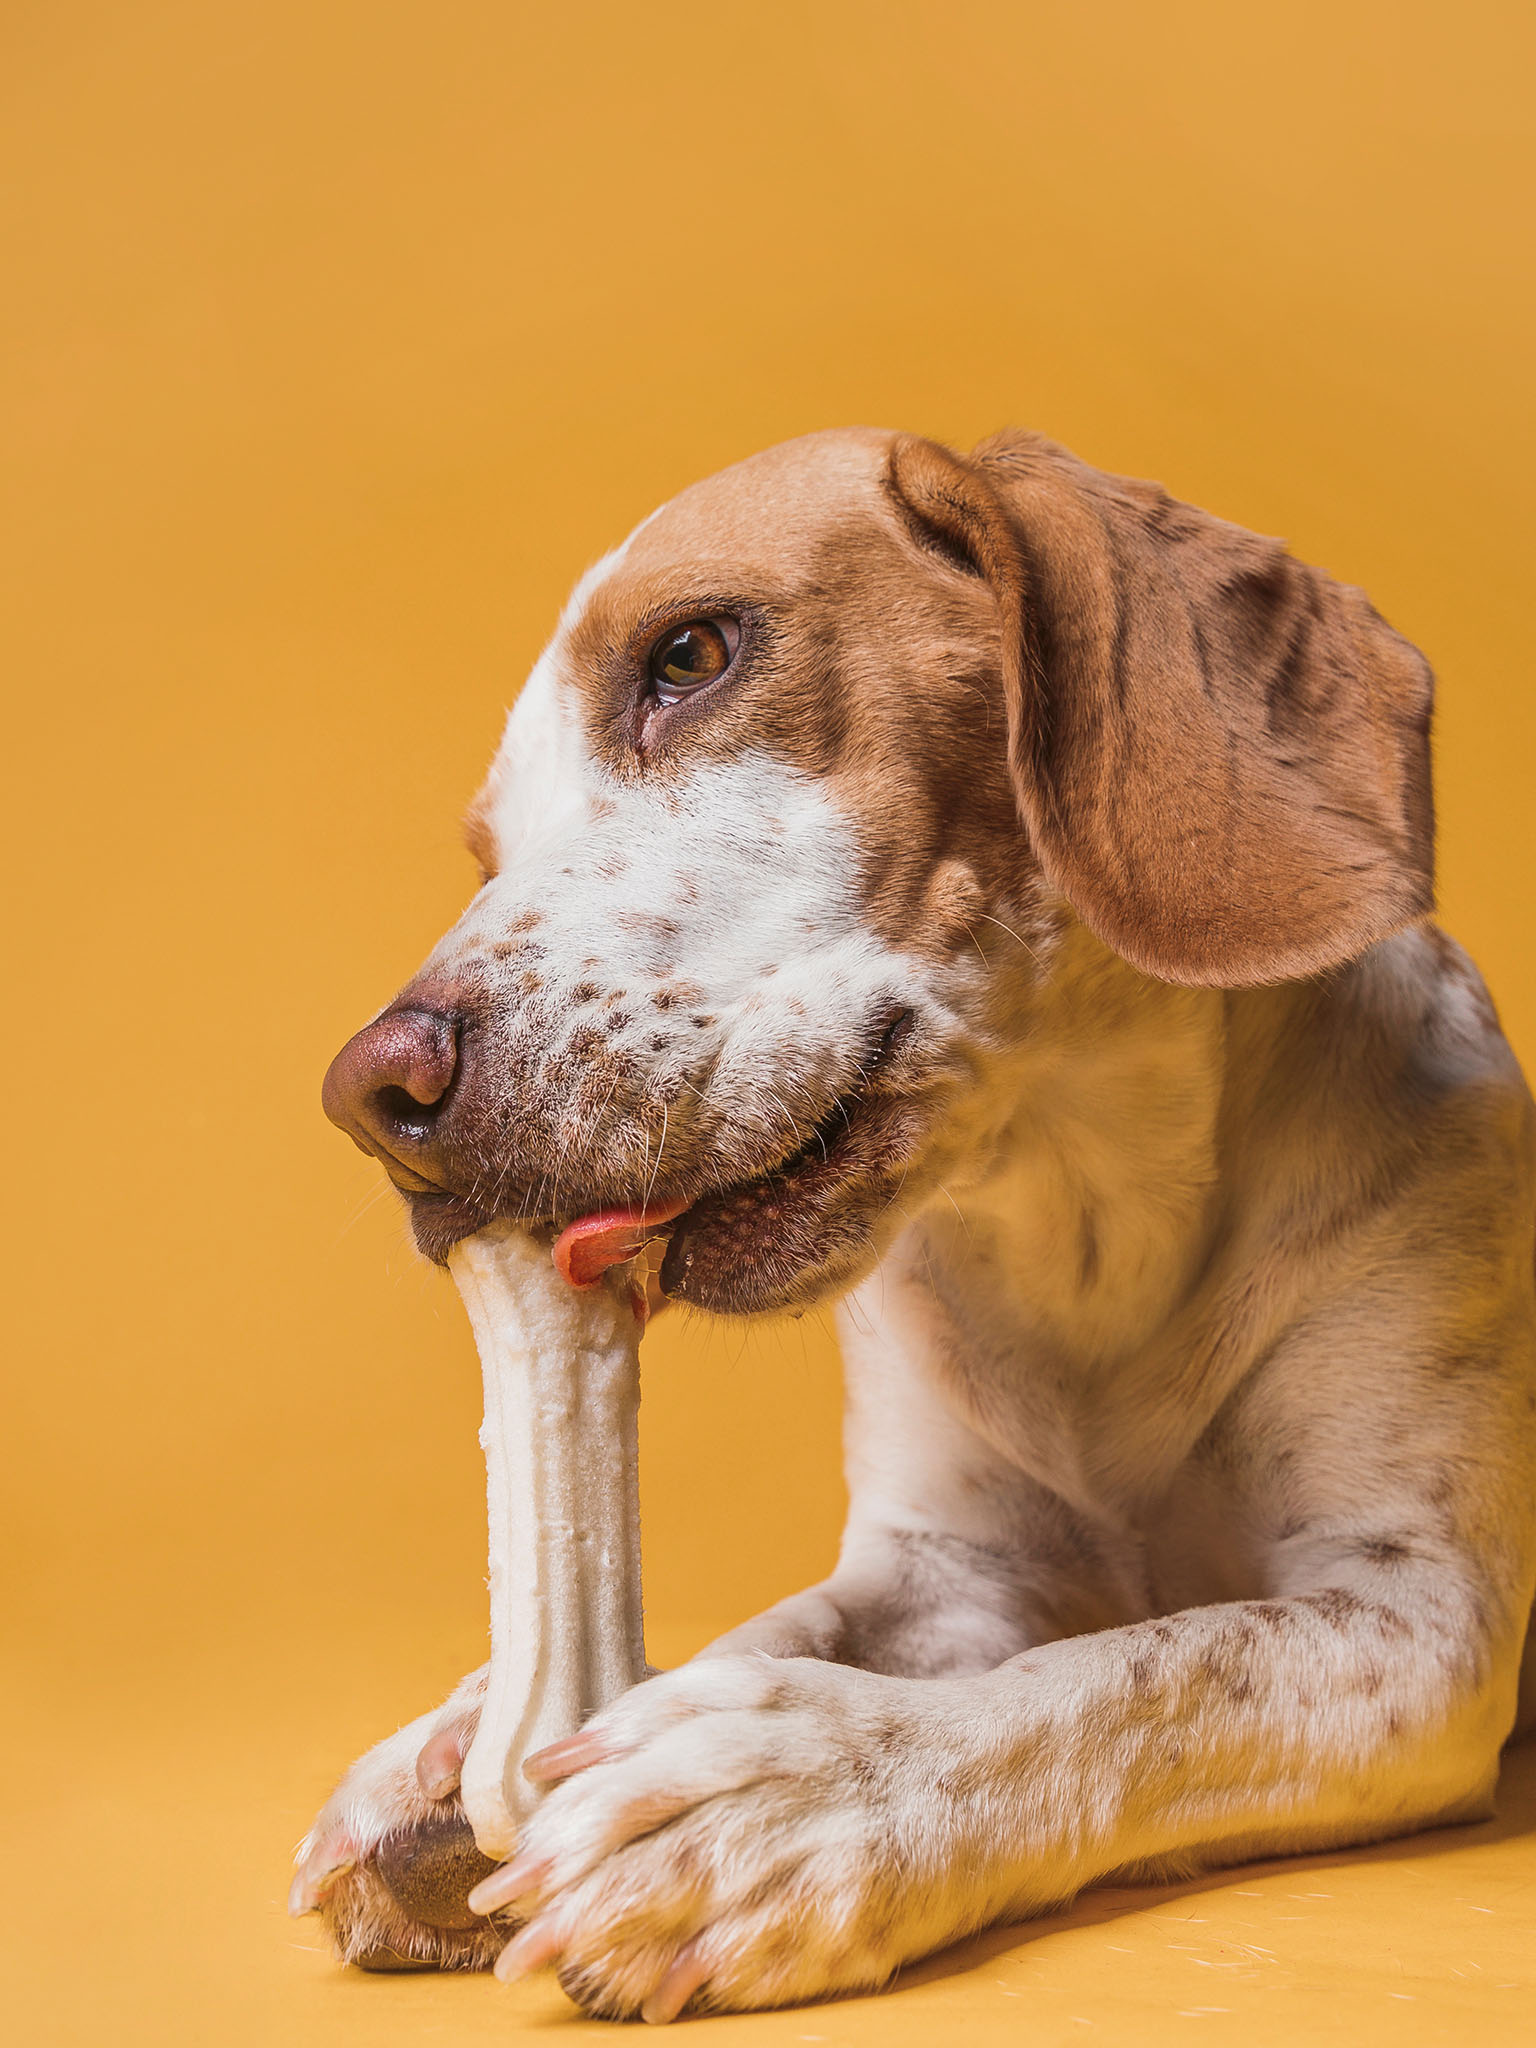 a dog eating a bone